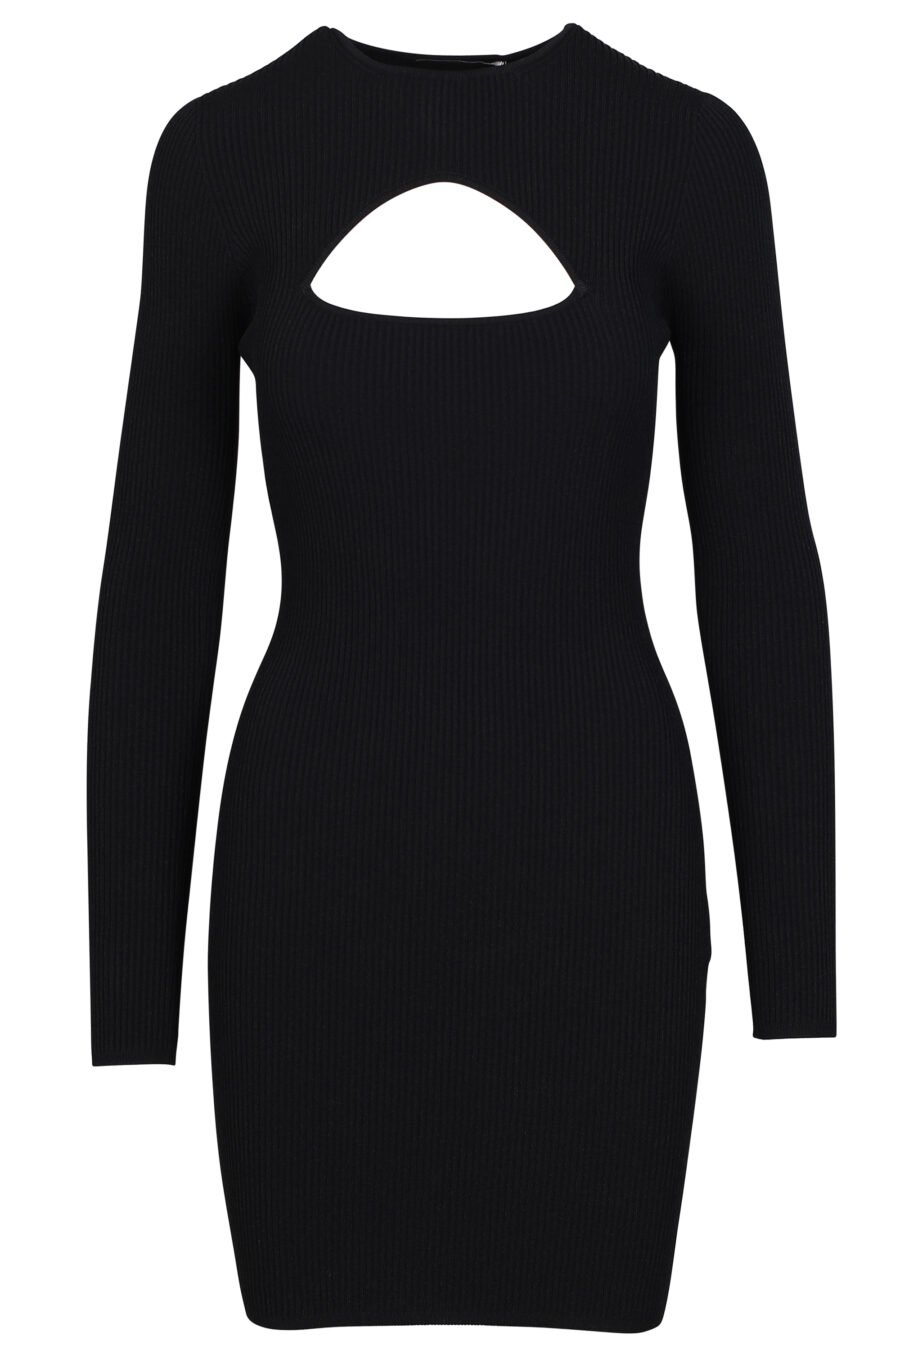 Kurzes schwarzes "Cut-Out" Kleid mit langen Ärmeln und Ausschnitt - 8054148010836